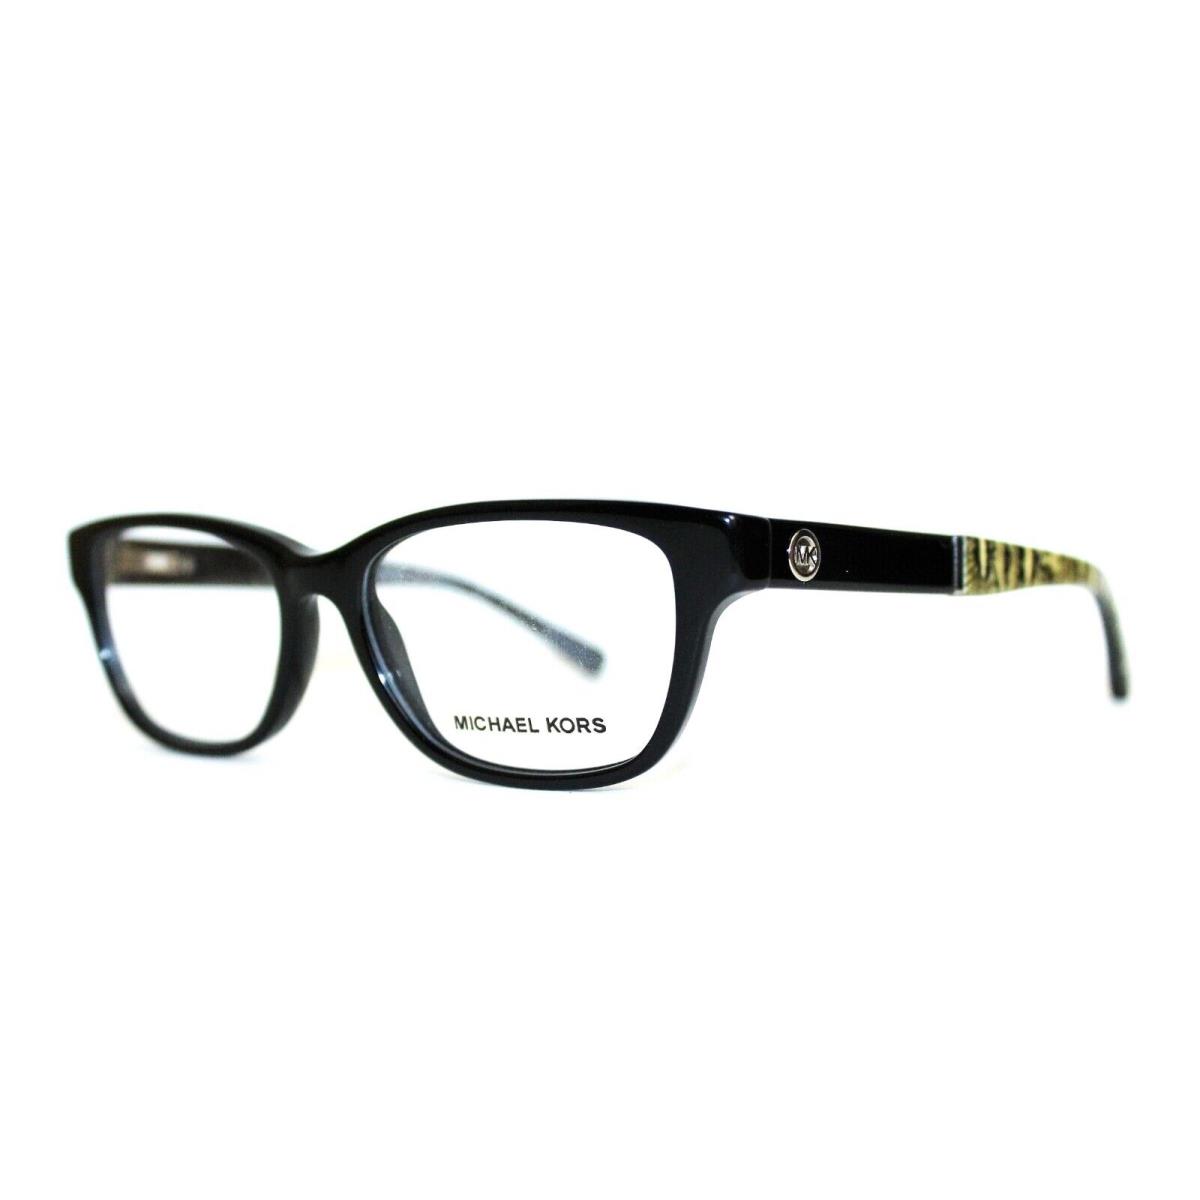 Michael Kors MK 4031 3168 Rania IV Black Eyeglasses RX 49-15-135MM